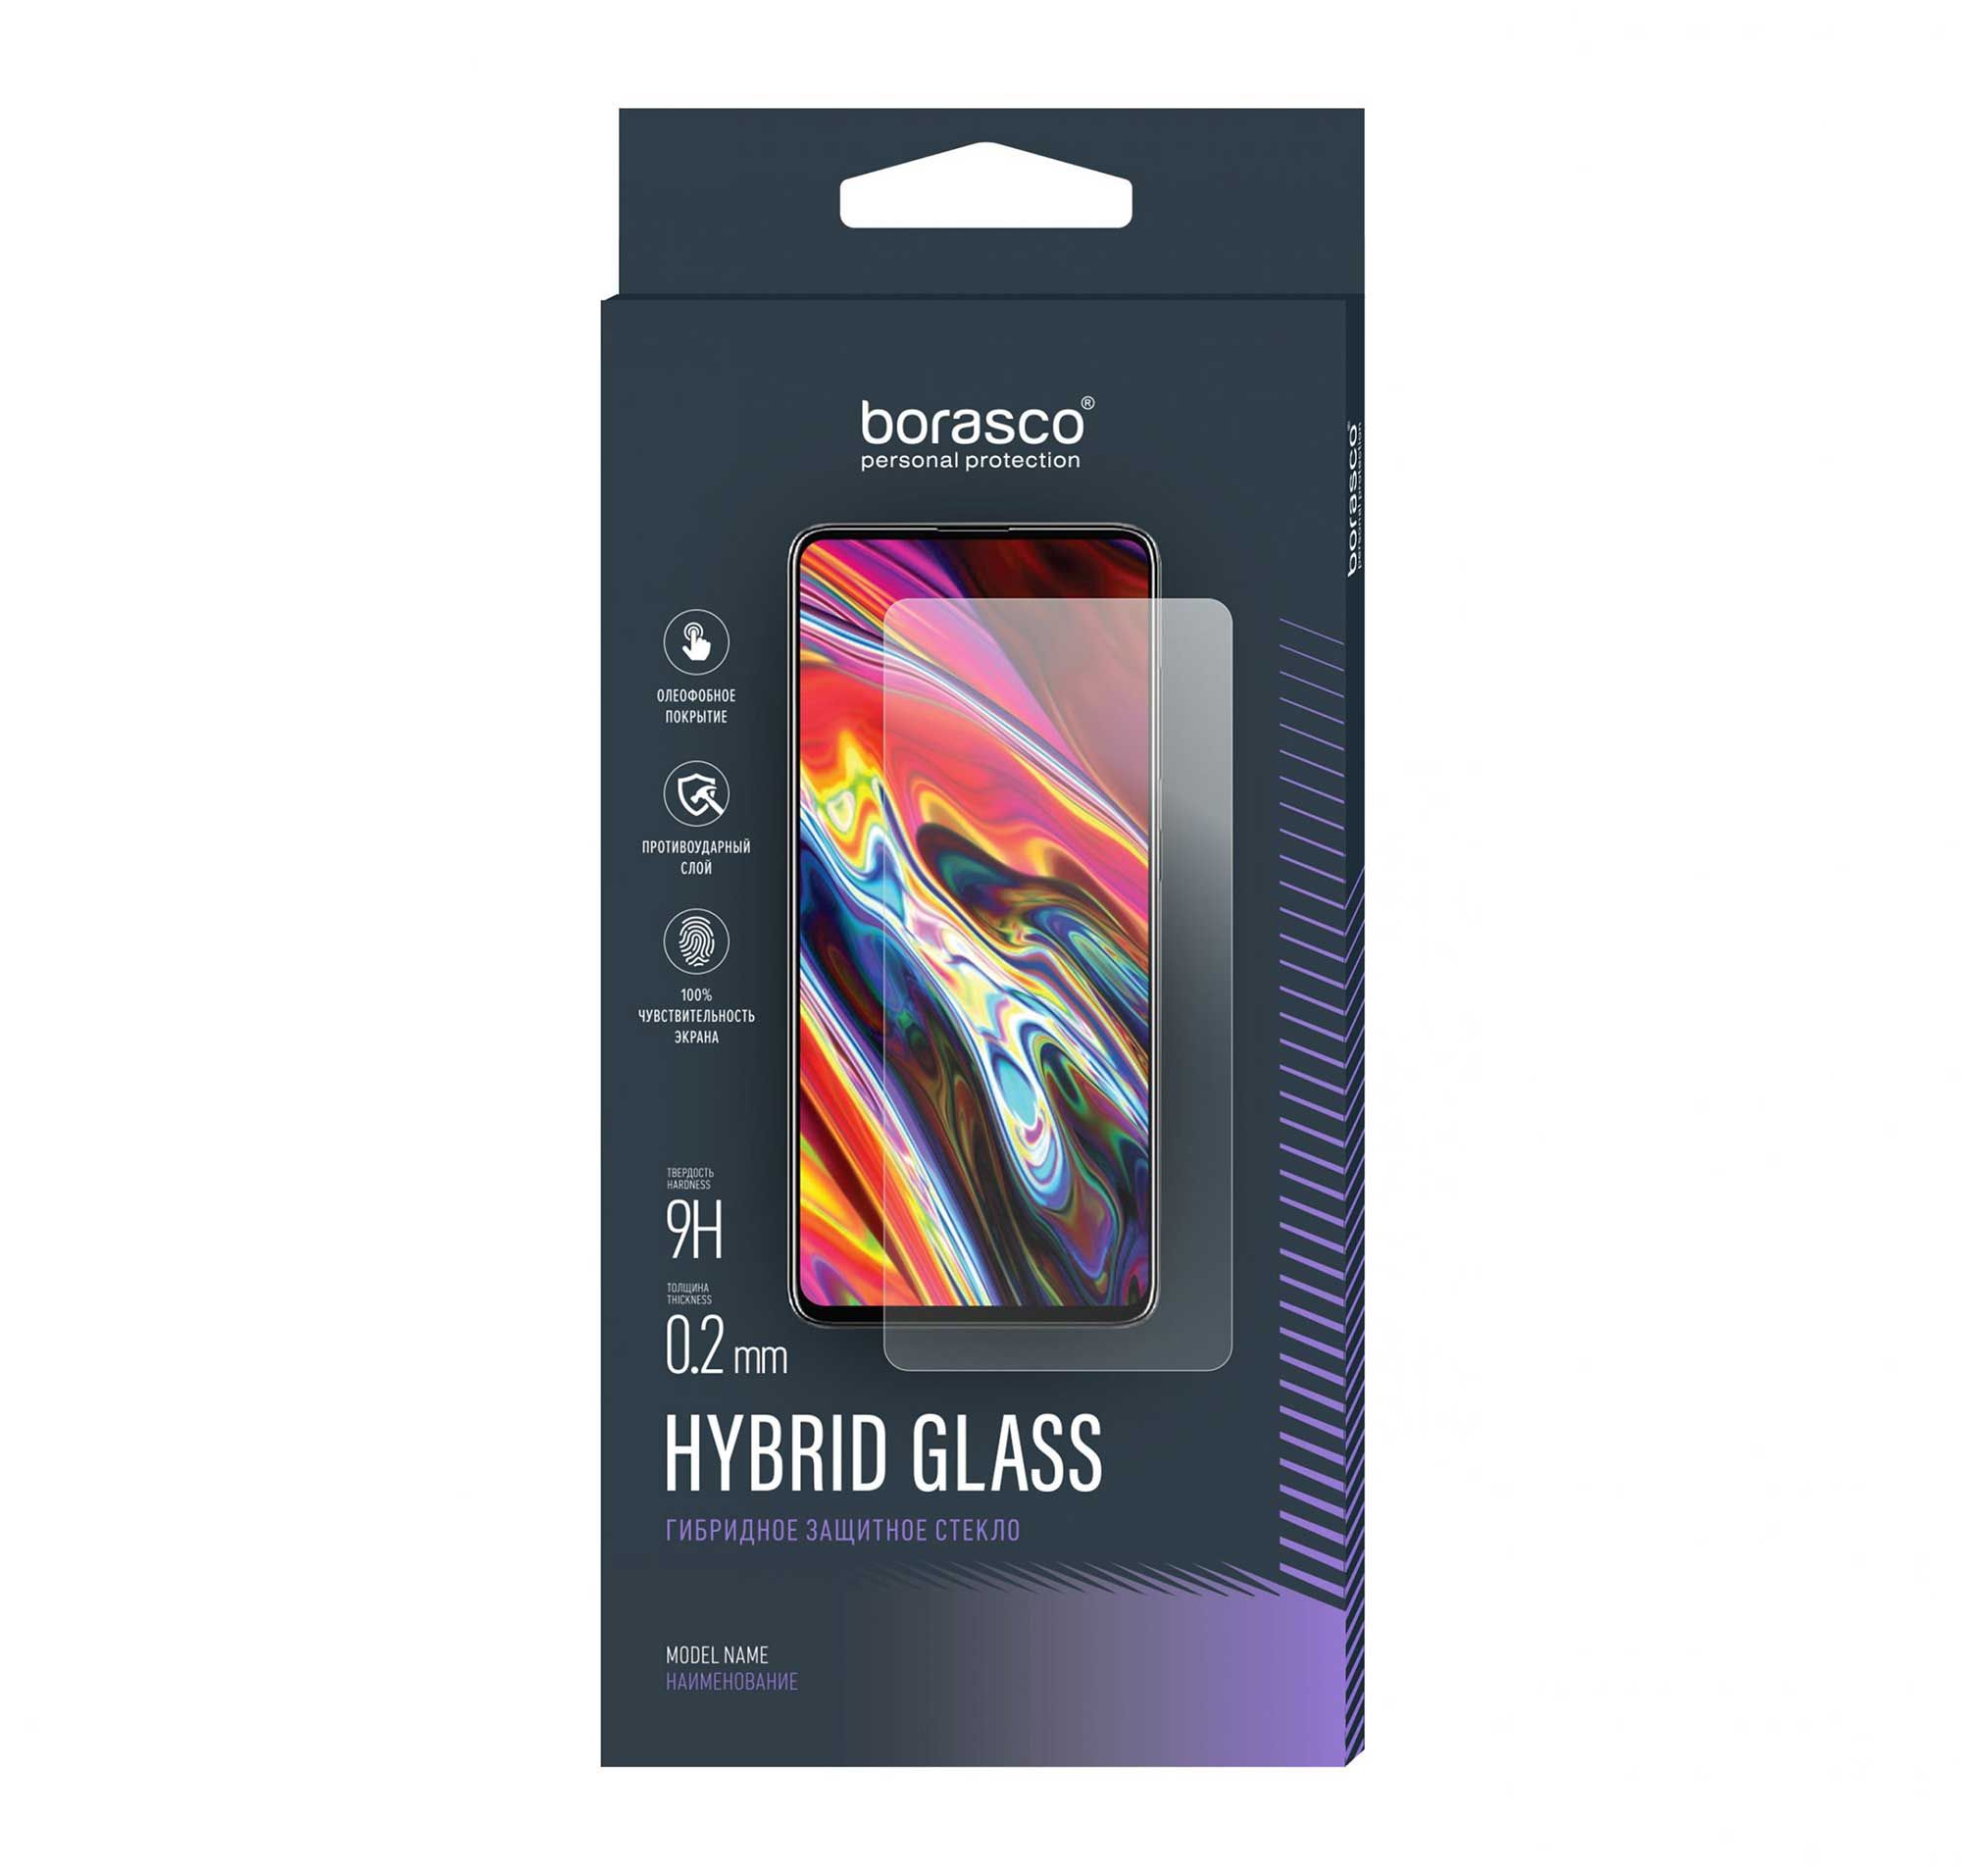 Защитное стекло Hybrid Glass для Vivo T1 защитное стекло для vivo v20 и vivo v20se стекло на виво в20 и виво в20се в комплекте 2 стекла